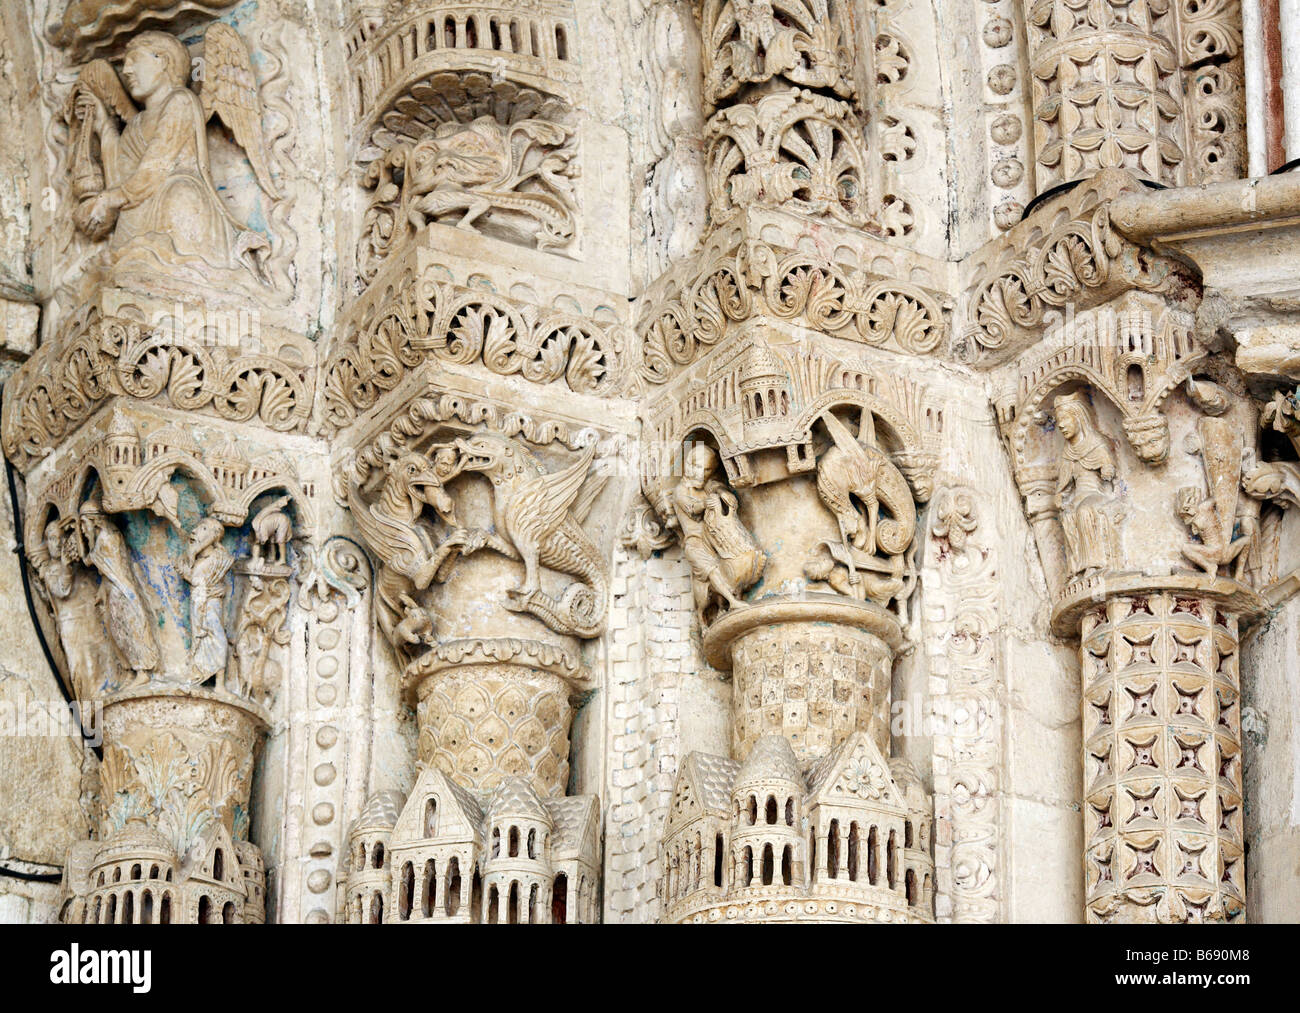 L'art religieux, sculptures romanes sur le portail de la cathédrale de Bourges (1195-1270), UNESCO World Heritage Site, Bourges, France Banque D'Images